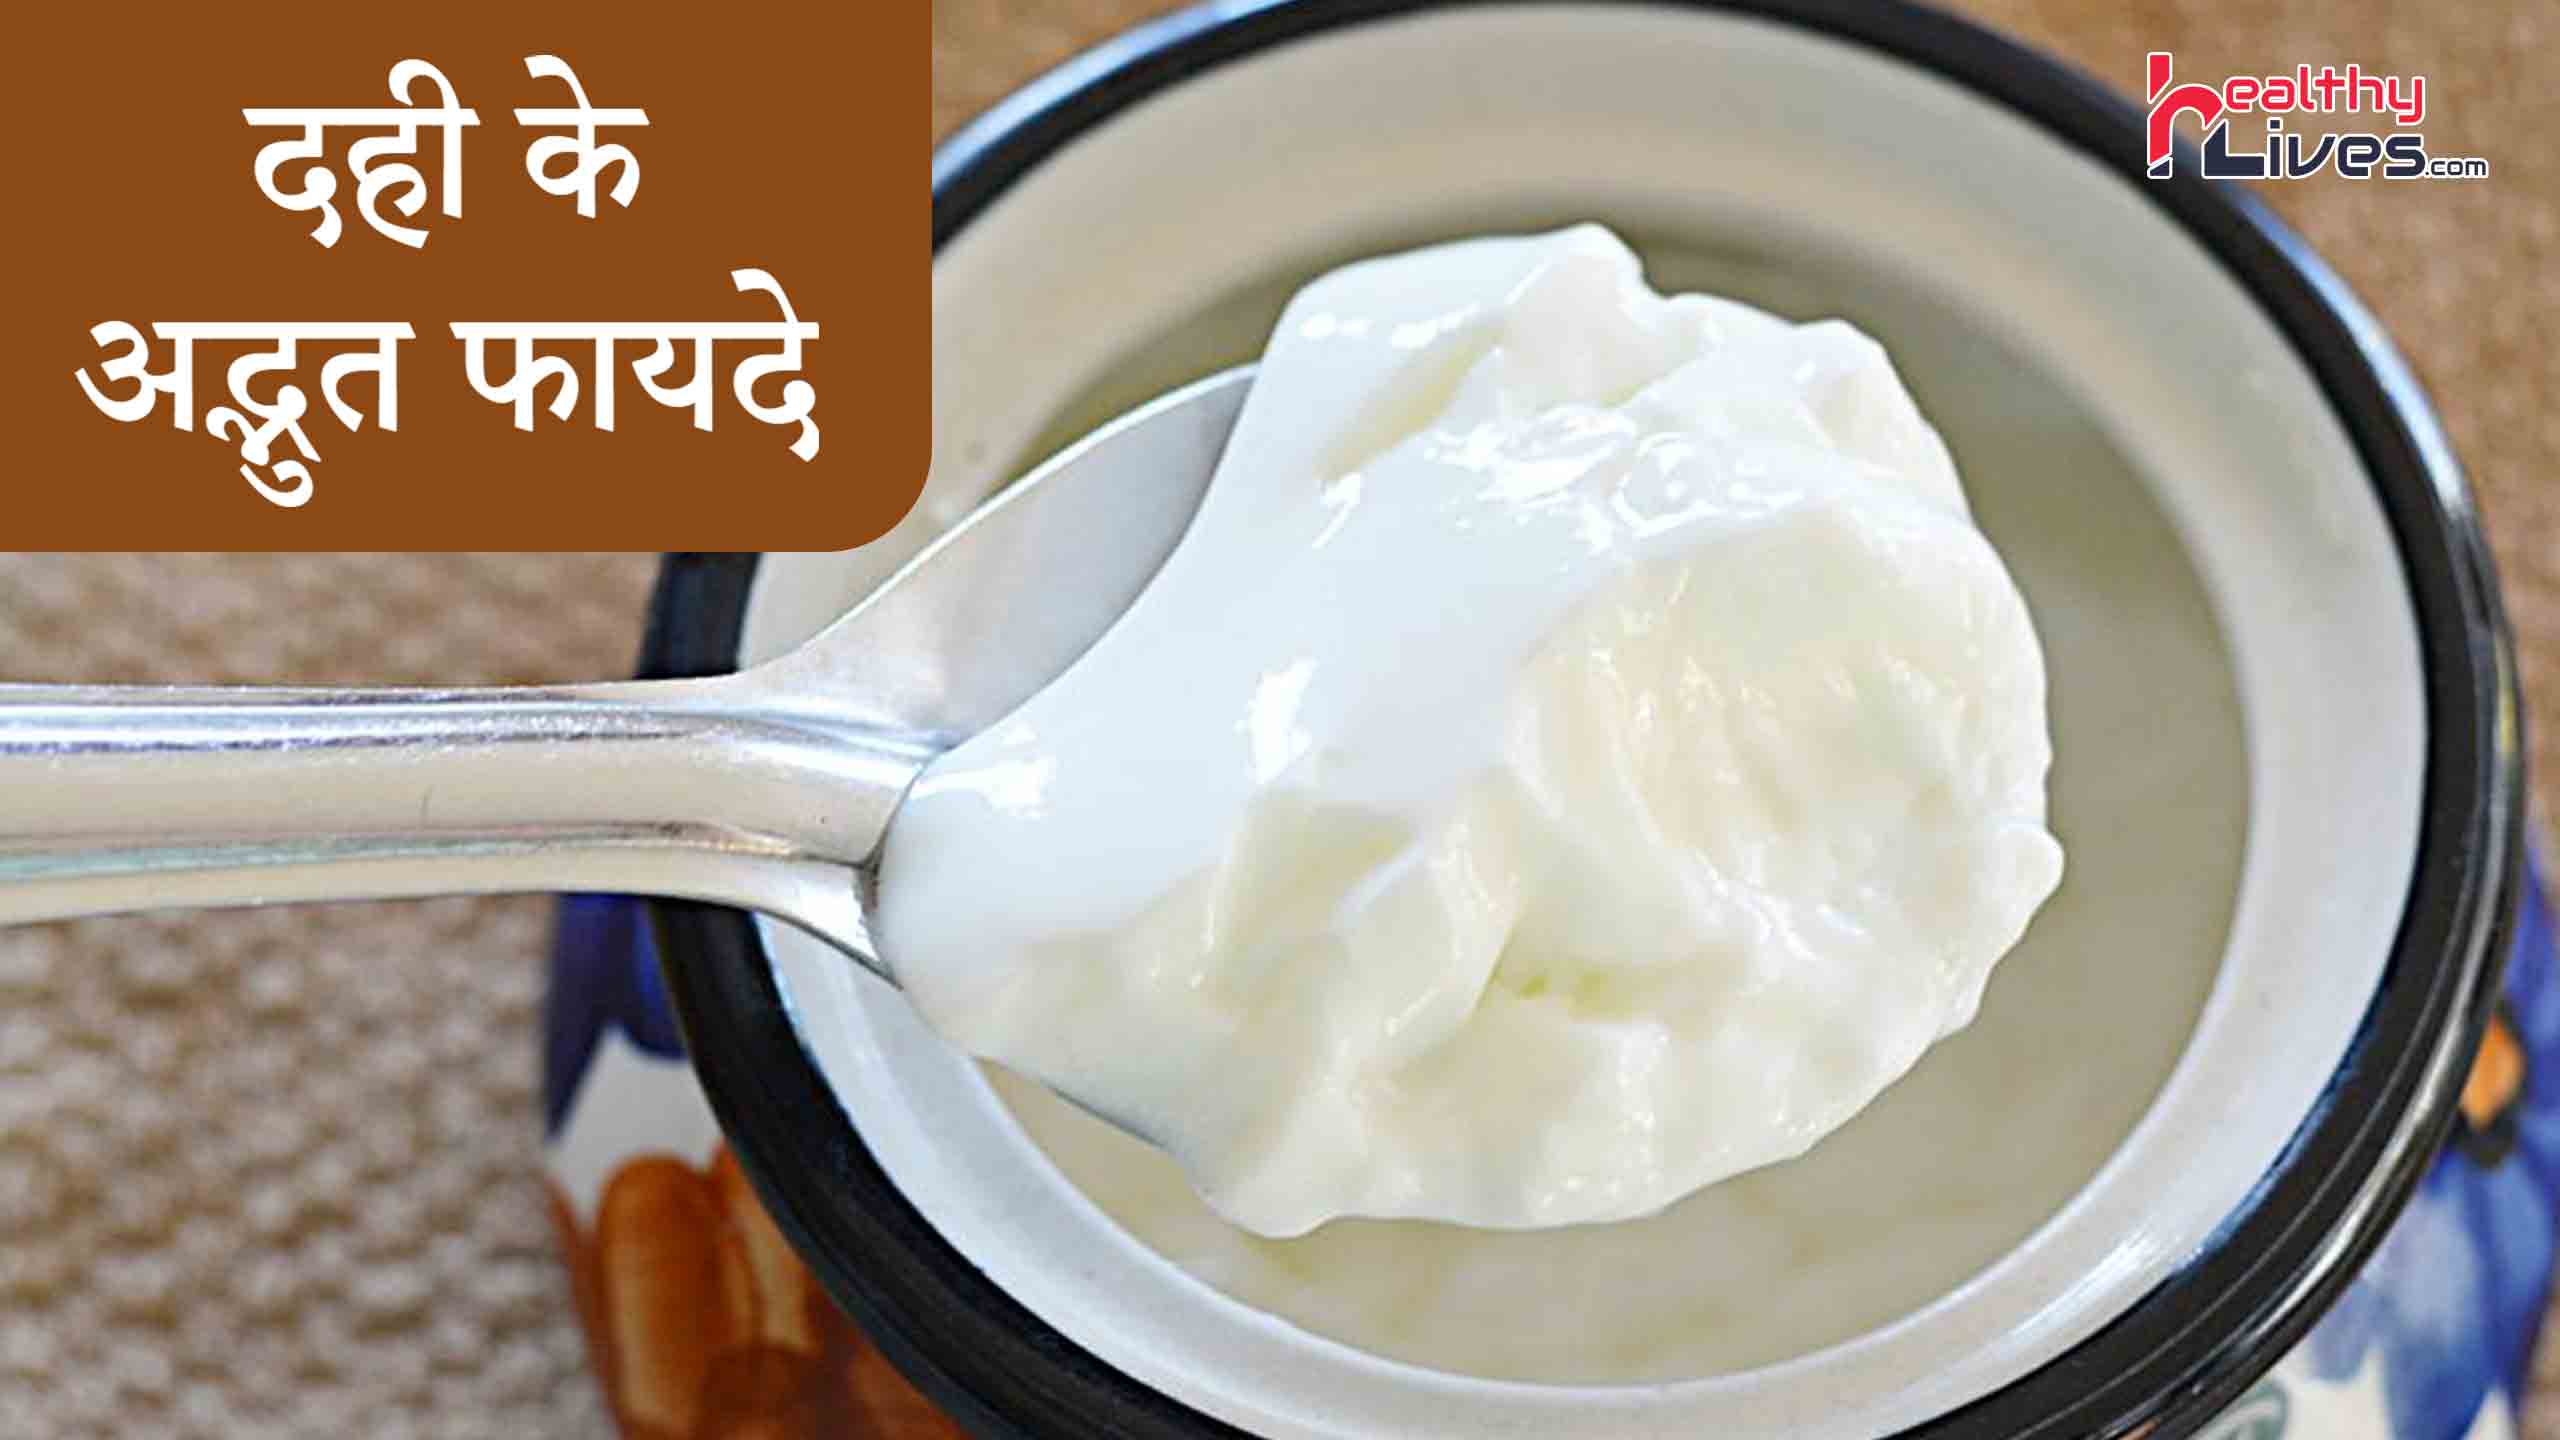 Yogurt Benefits in Hindi: दही खाइये और हर तरह से स्वास्थ रहिये